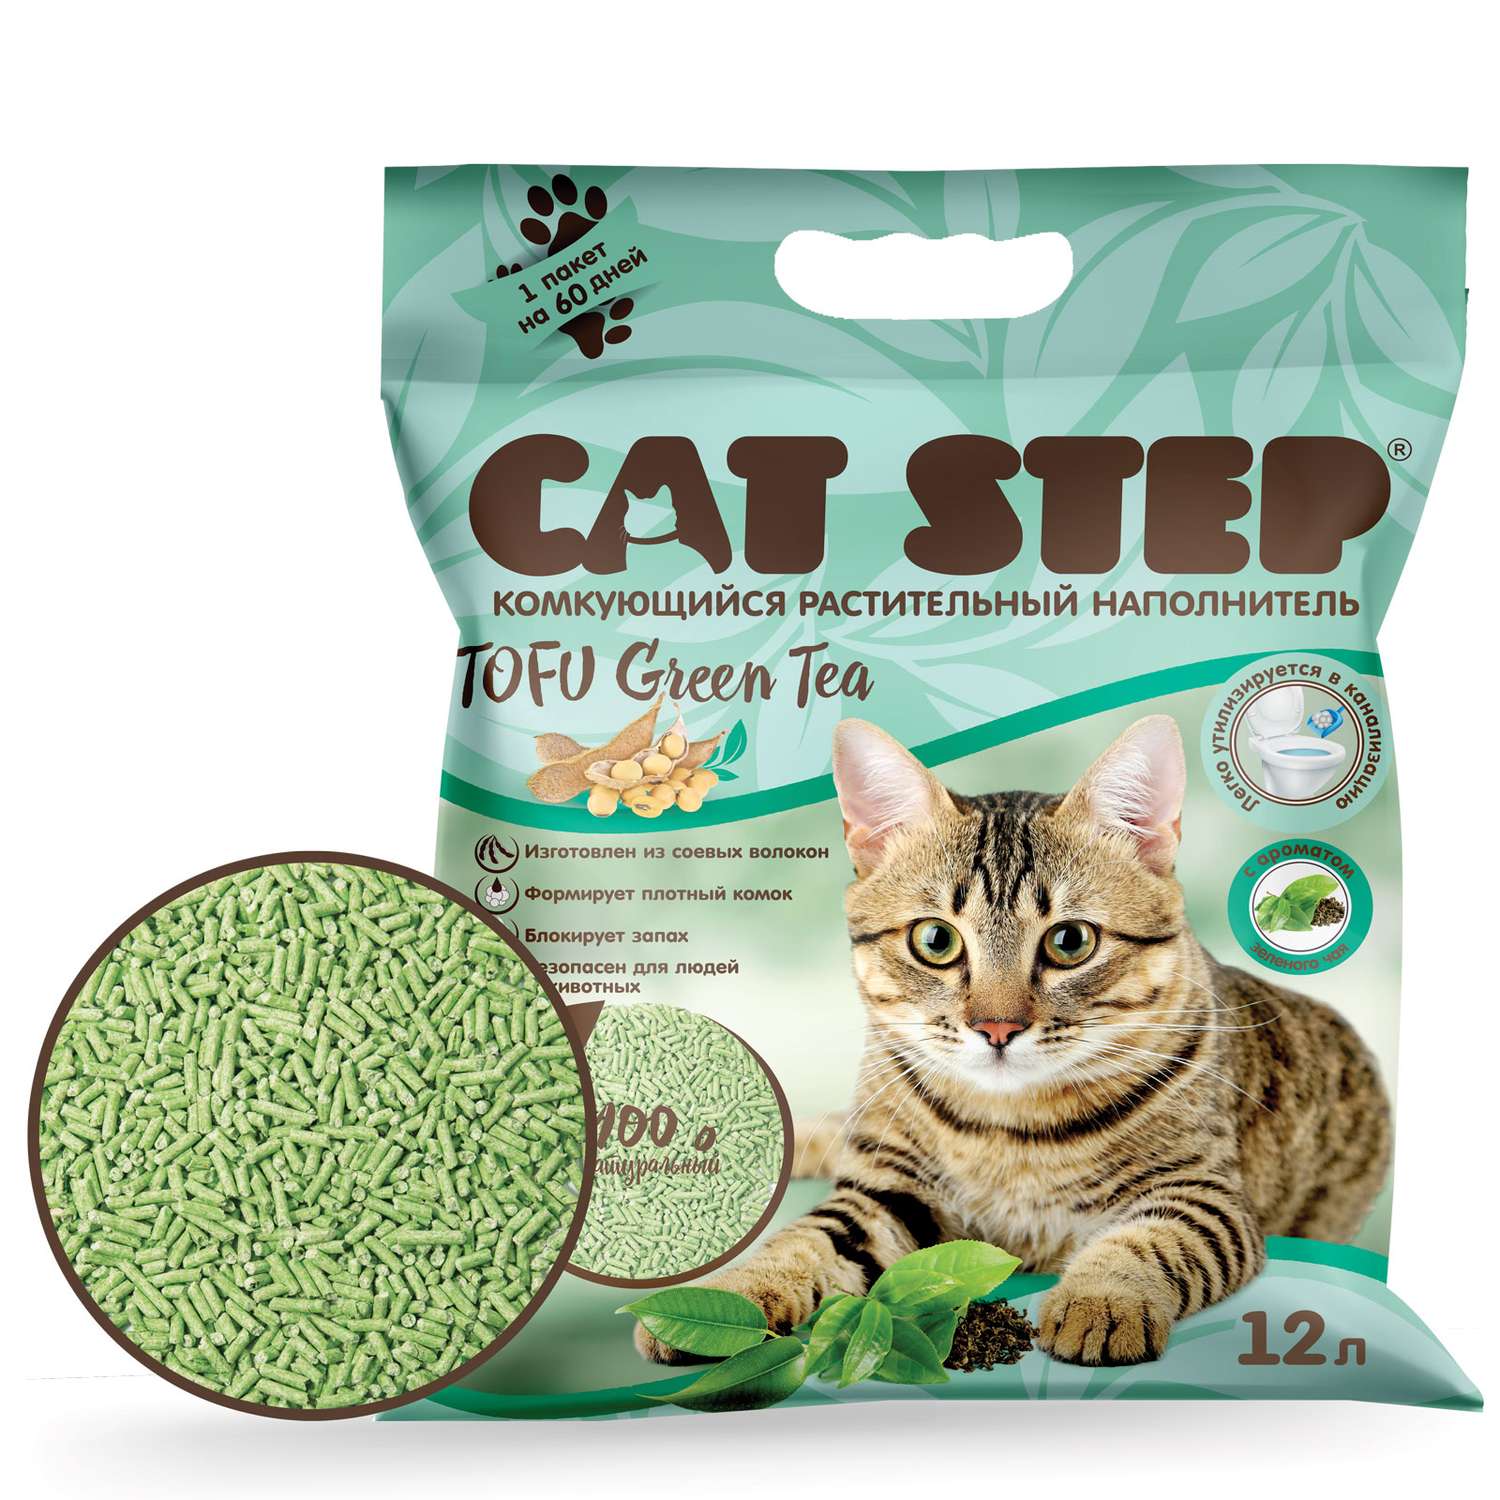 Наполнитель для кошачьего туалета Cat Step Tofu Green Tea комкующийся растительный 12л - фото 3